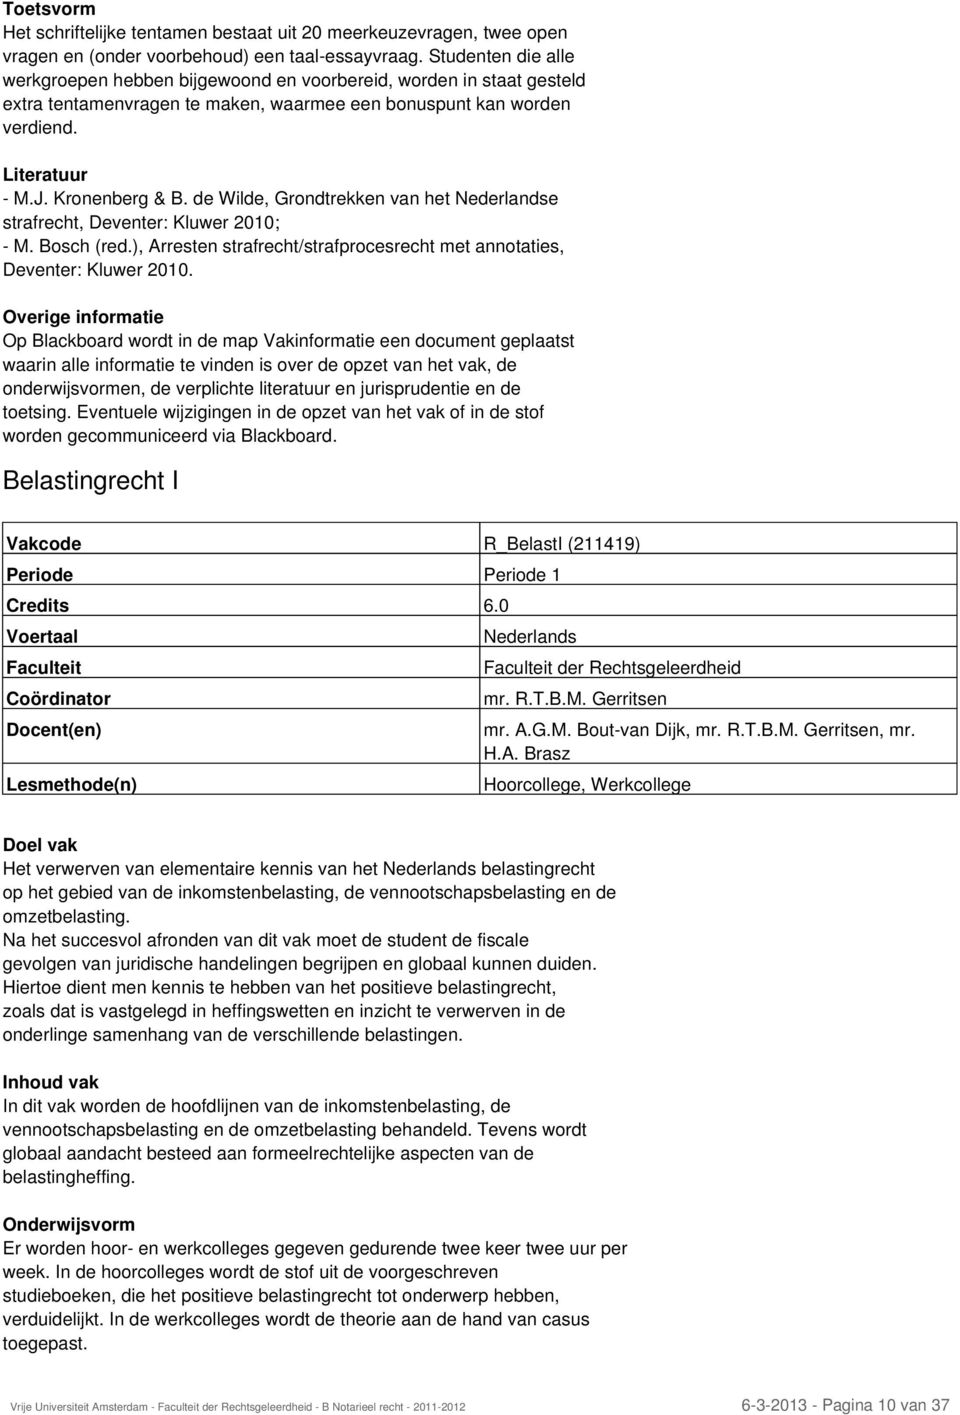 de Wilde, Grondtrekken van het e strafrecht, Deventer: Kluwer 2010; - M. Bosch (red.), Arresten strafrecht/strafprocesrecht met annotaties, Deventer: Kluwer 2010.